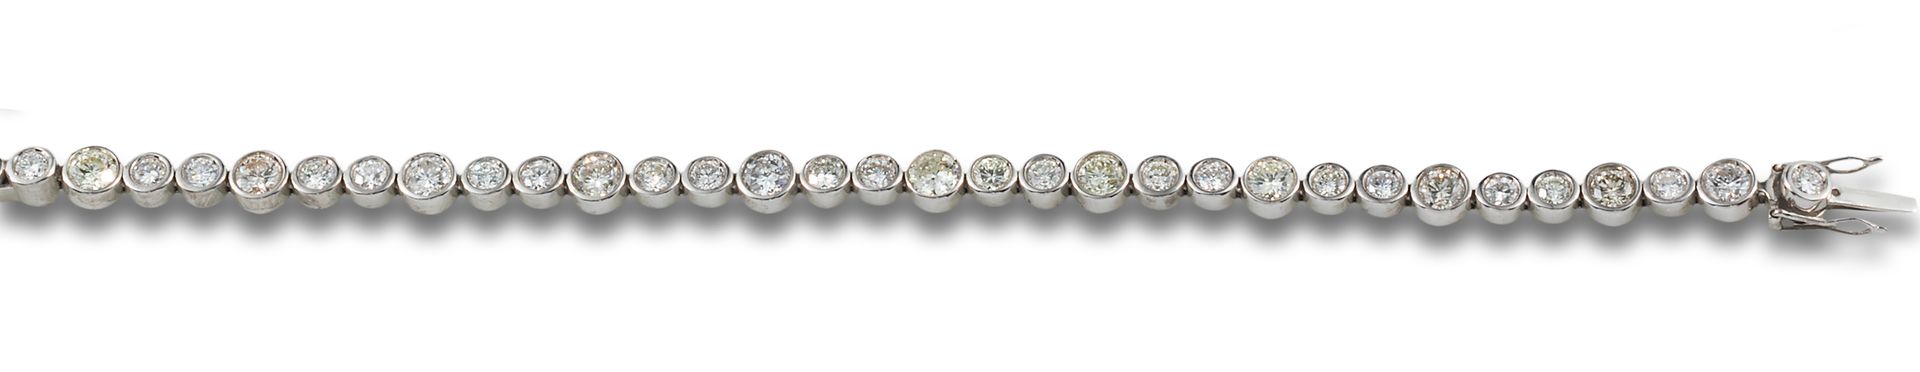 18 kt white gold riviere bracelet. Formata da una fila di diamanti incastonati a&hellip;